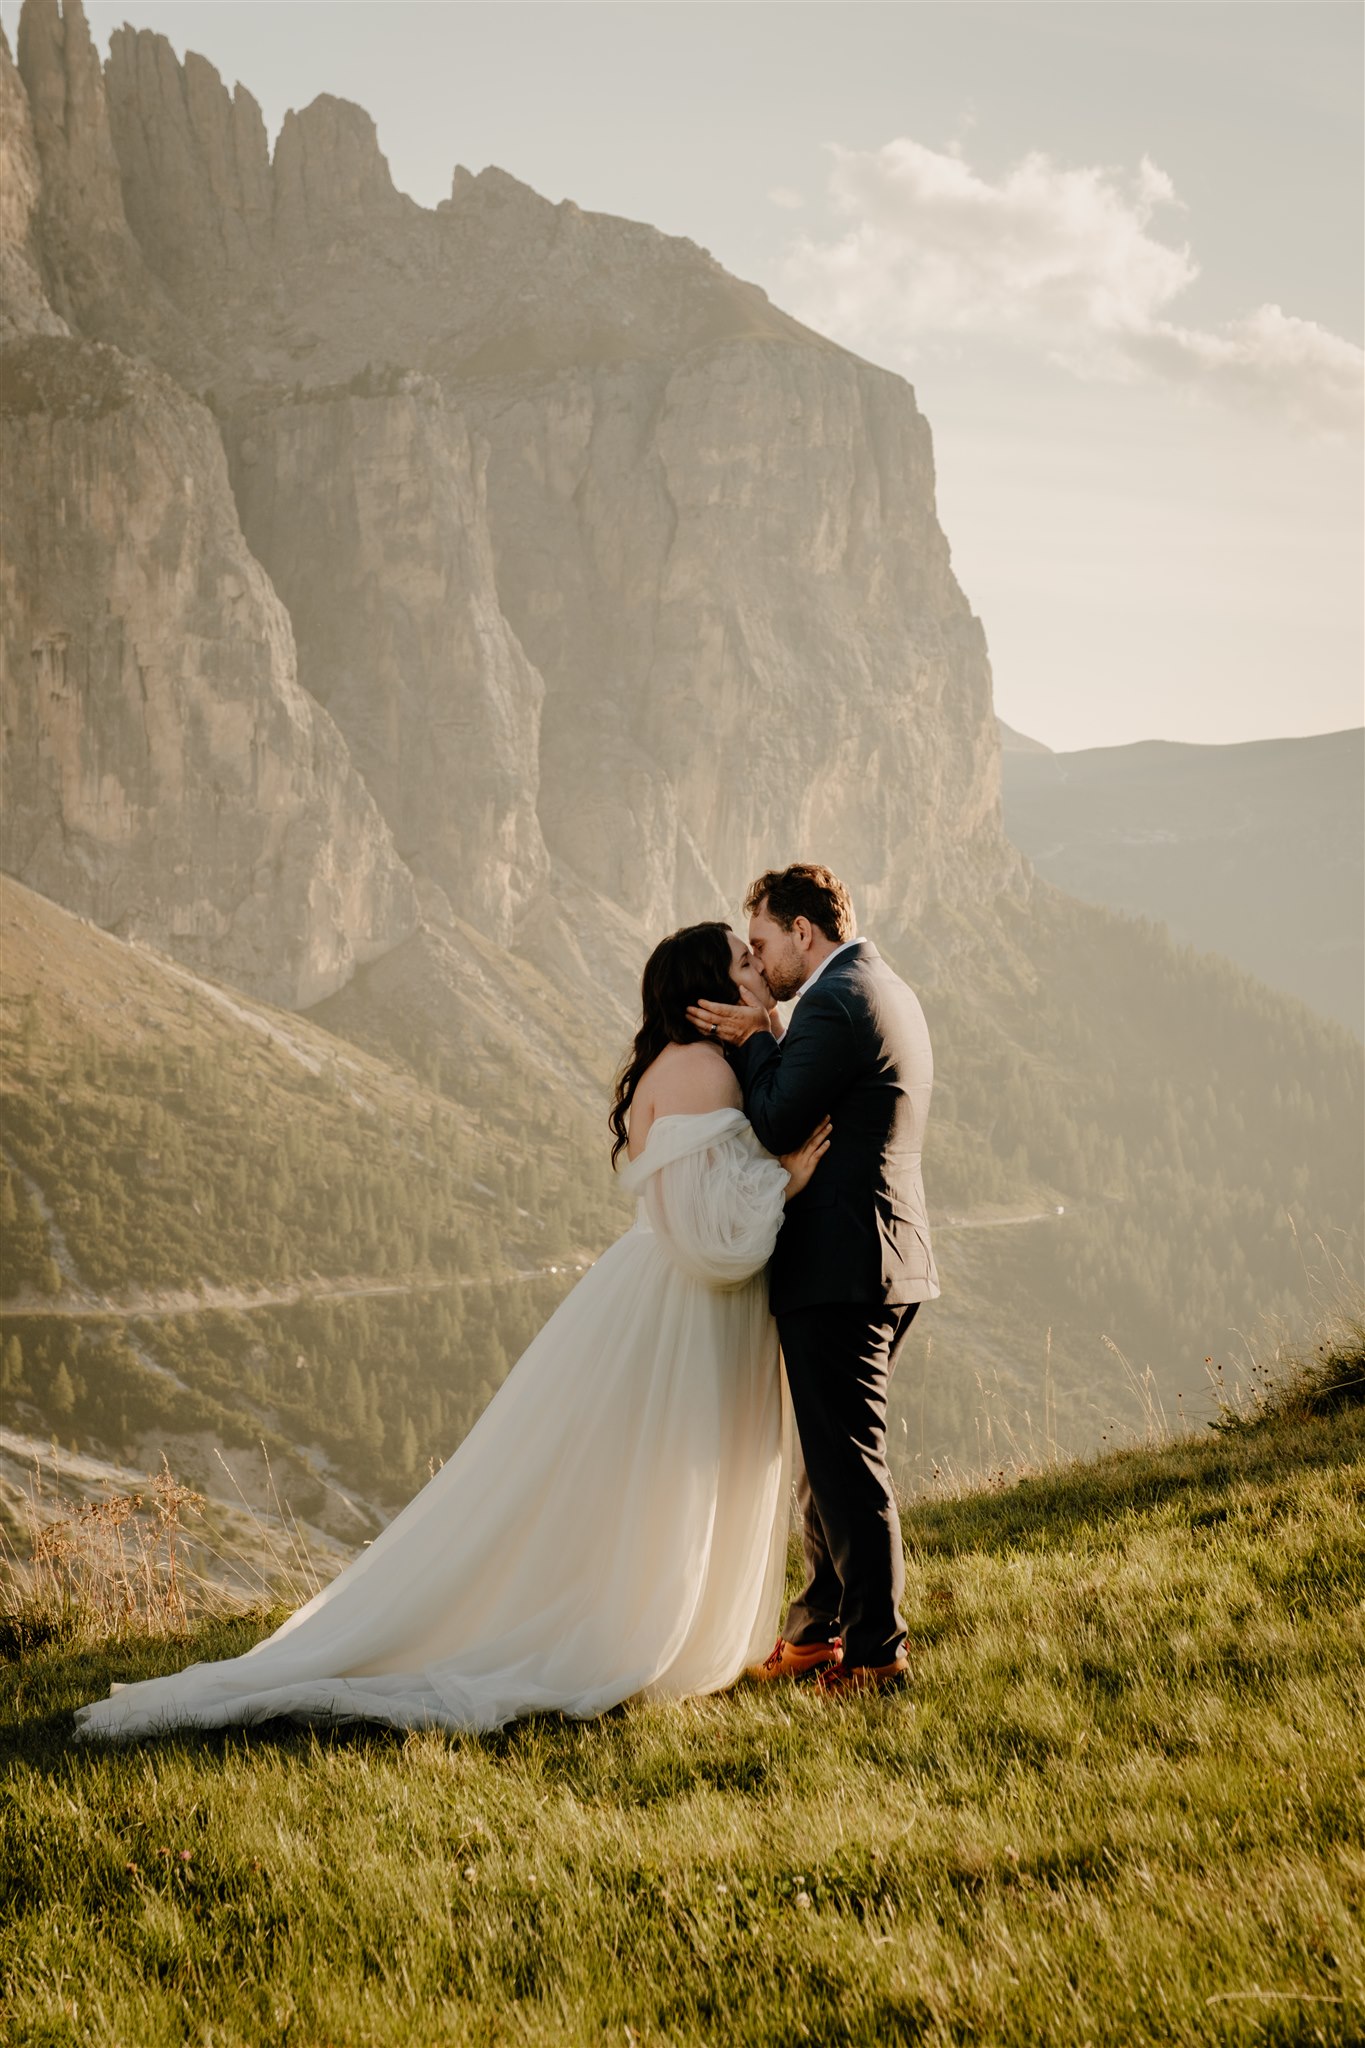 Honeymoon Vow Exchange in the Italian Dolomites